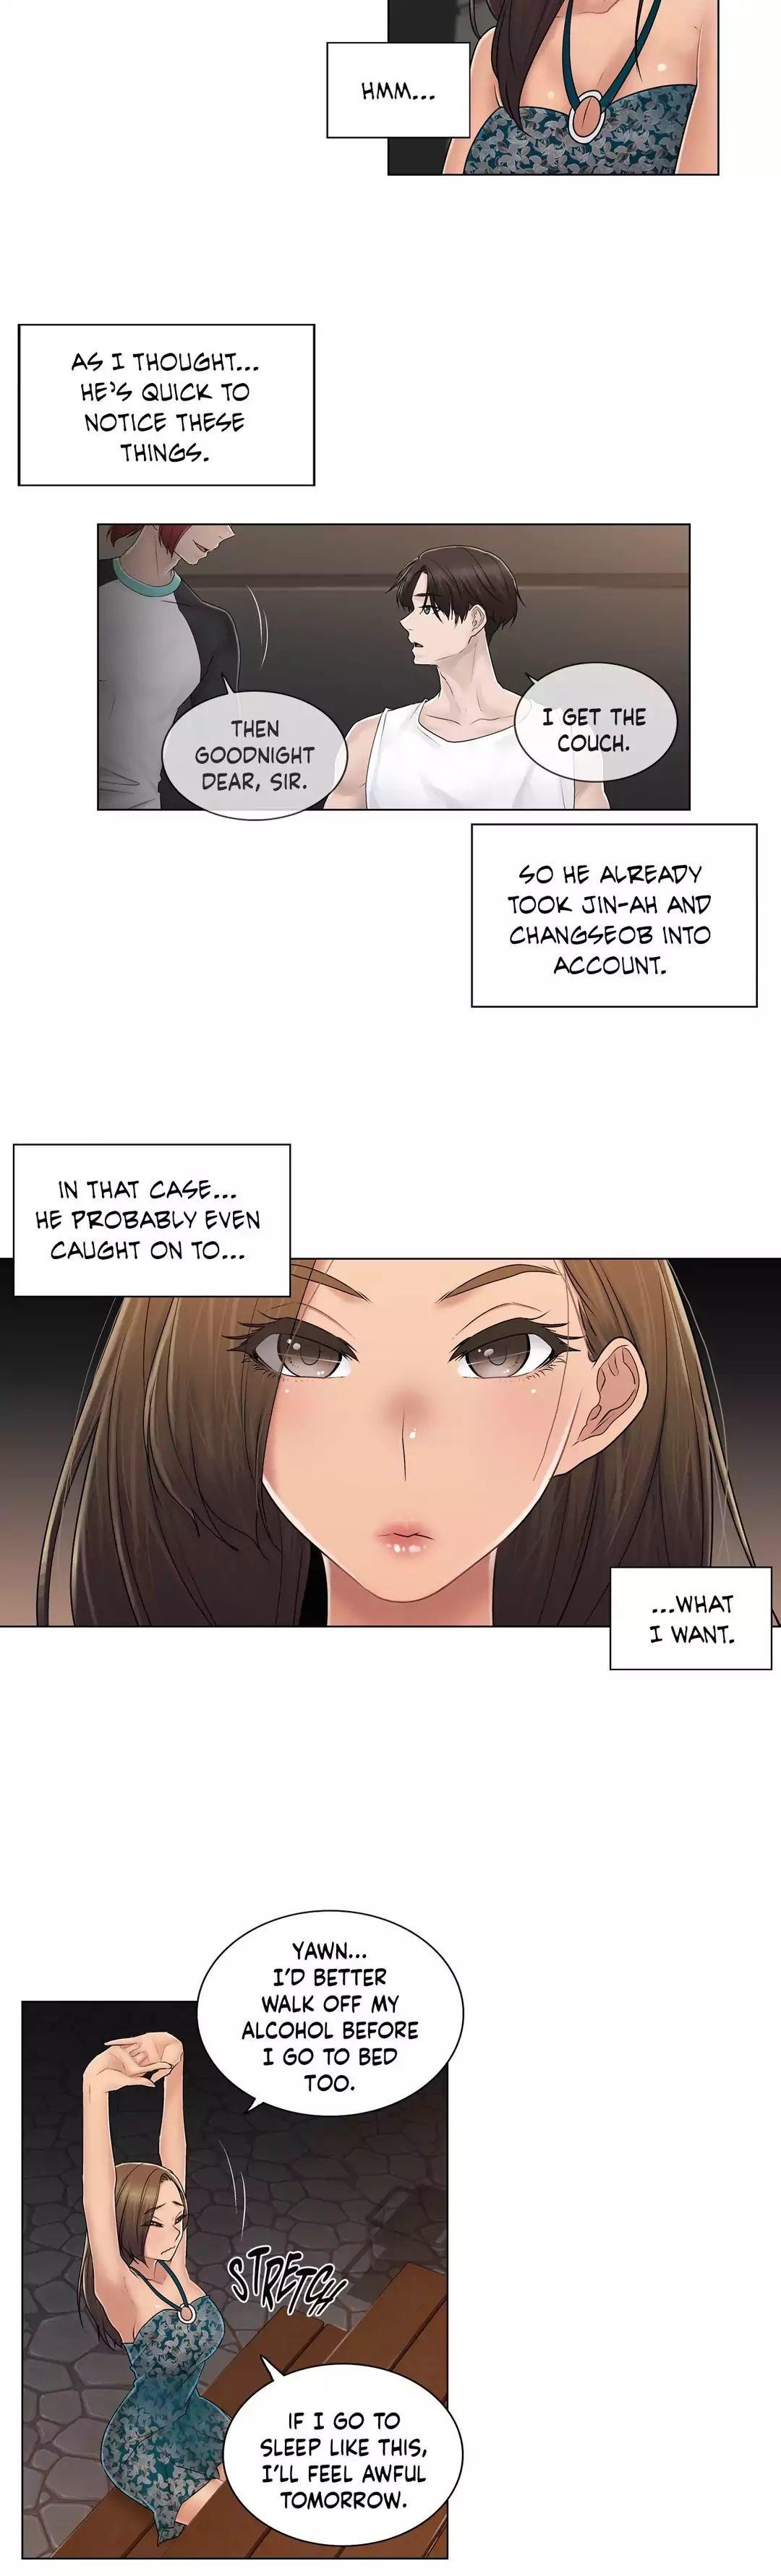 Read manga Miss Mystic - Chapter 92 Side Story 3... - k2xTUth7kk8SuDb - ManhwaXXL.com